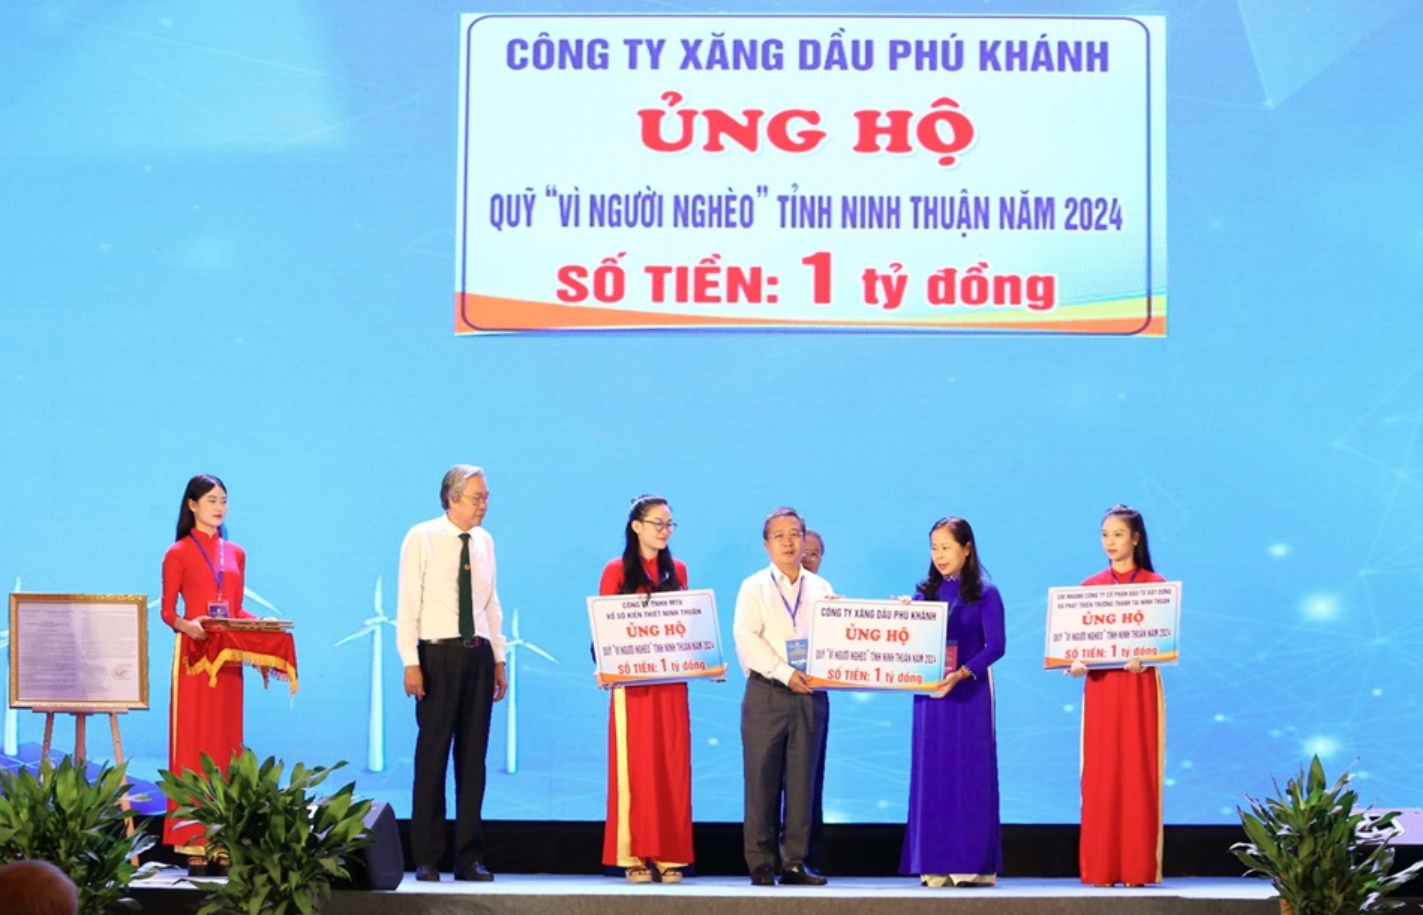 Petrolimex Khánh Hòa ủng hộ 1 tỷ đồng vào Quỹ “Vì người nghèo” tỉnh Ninh Thuận